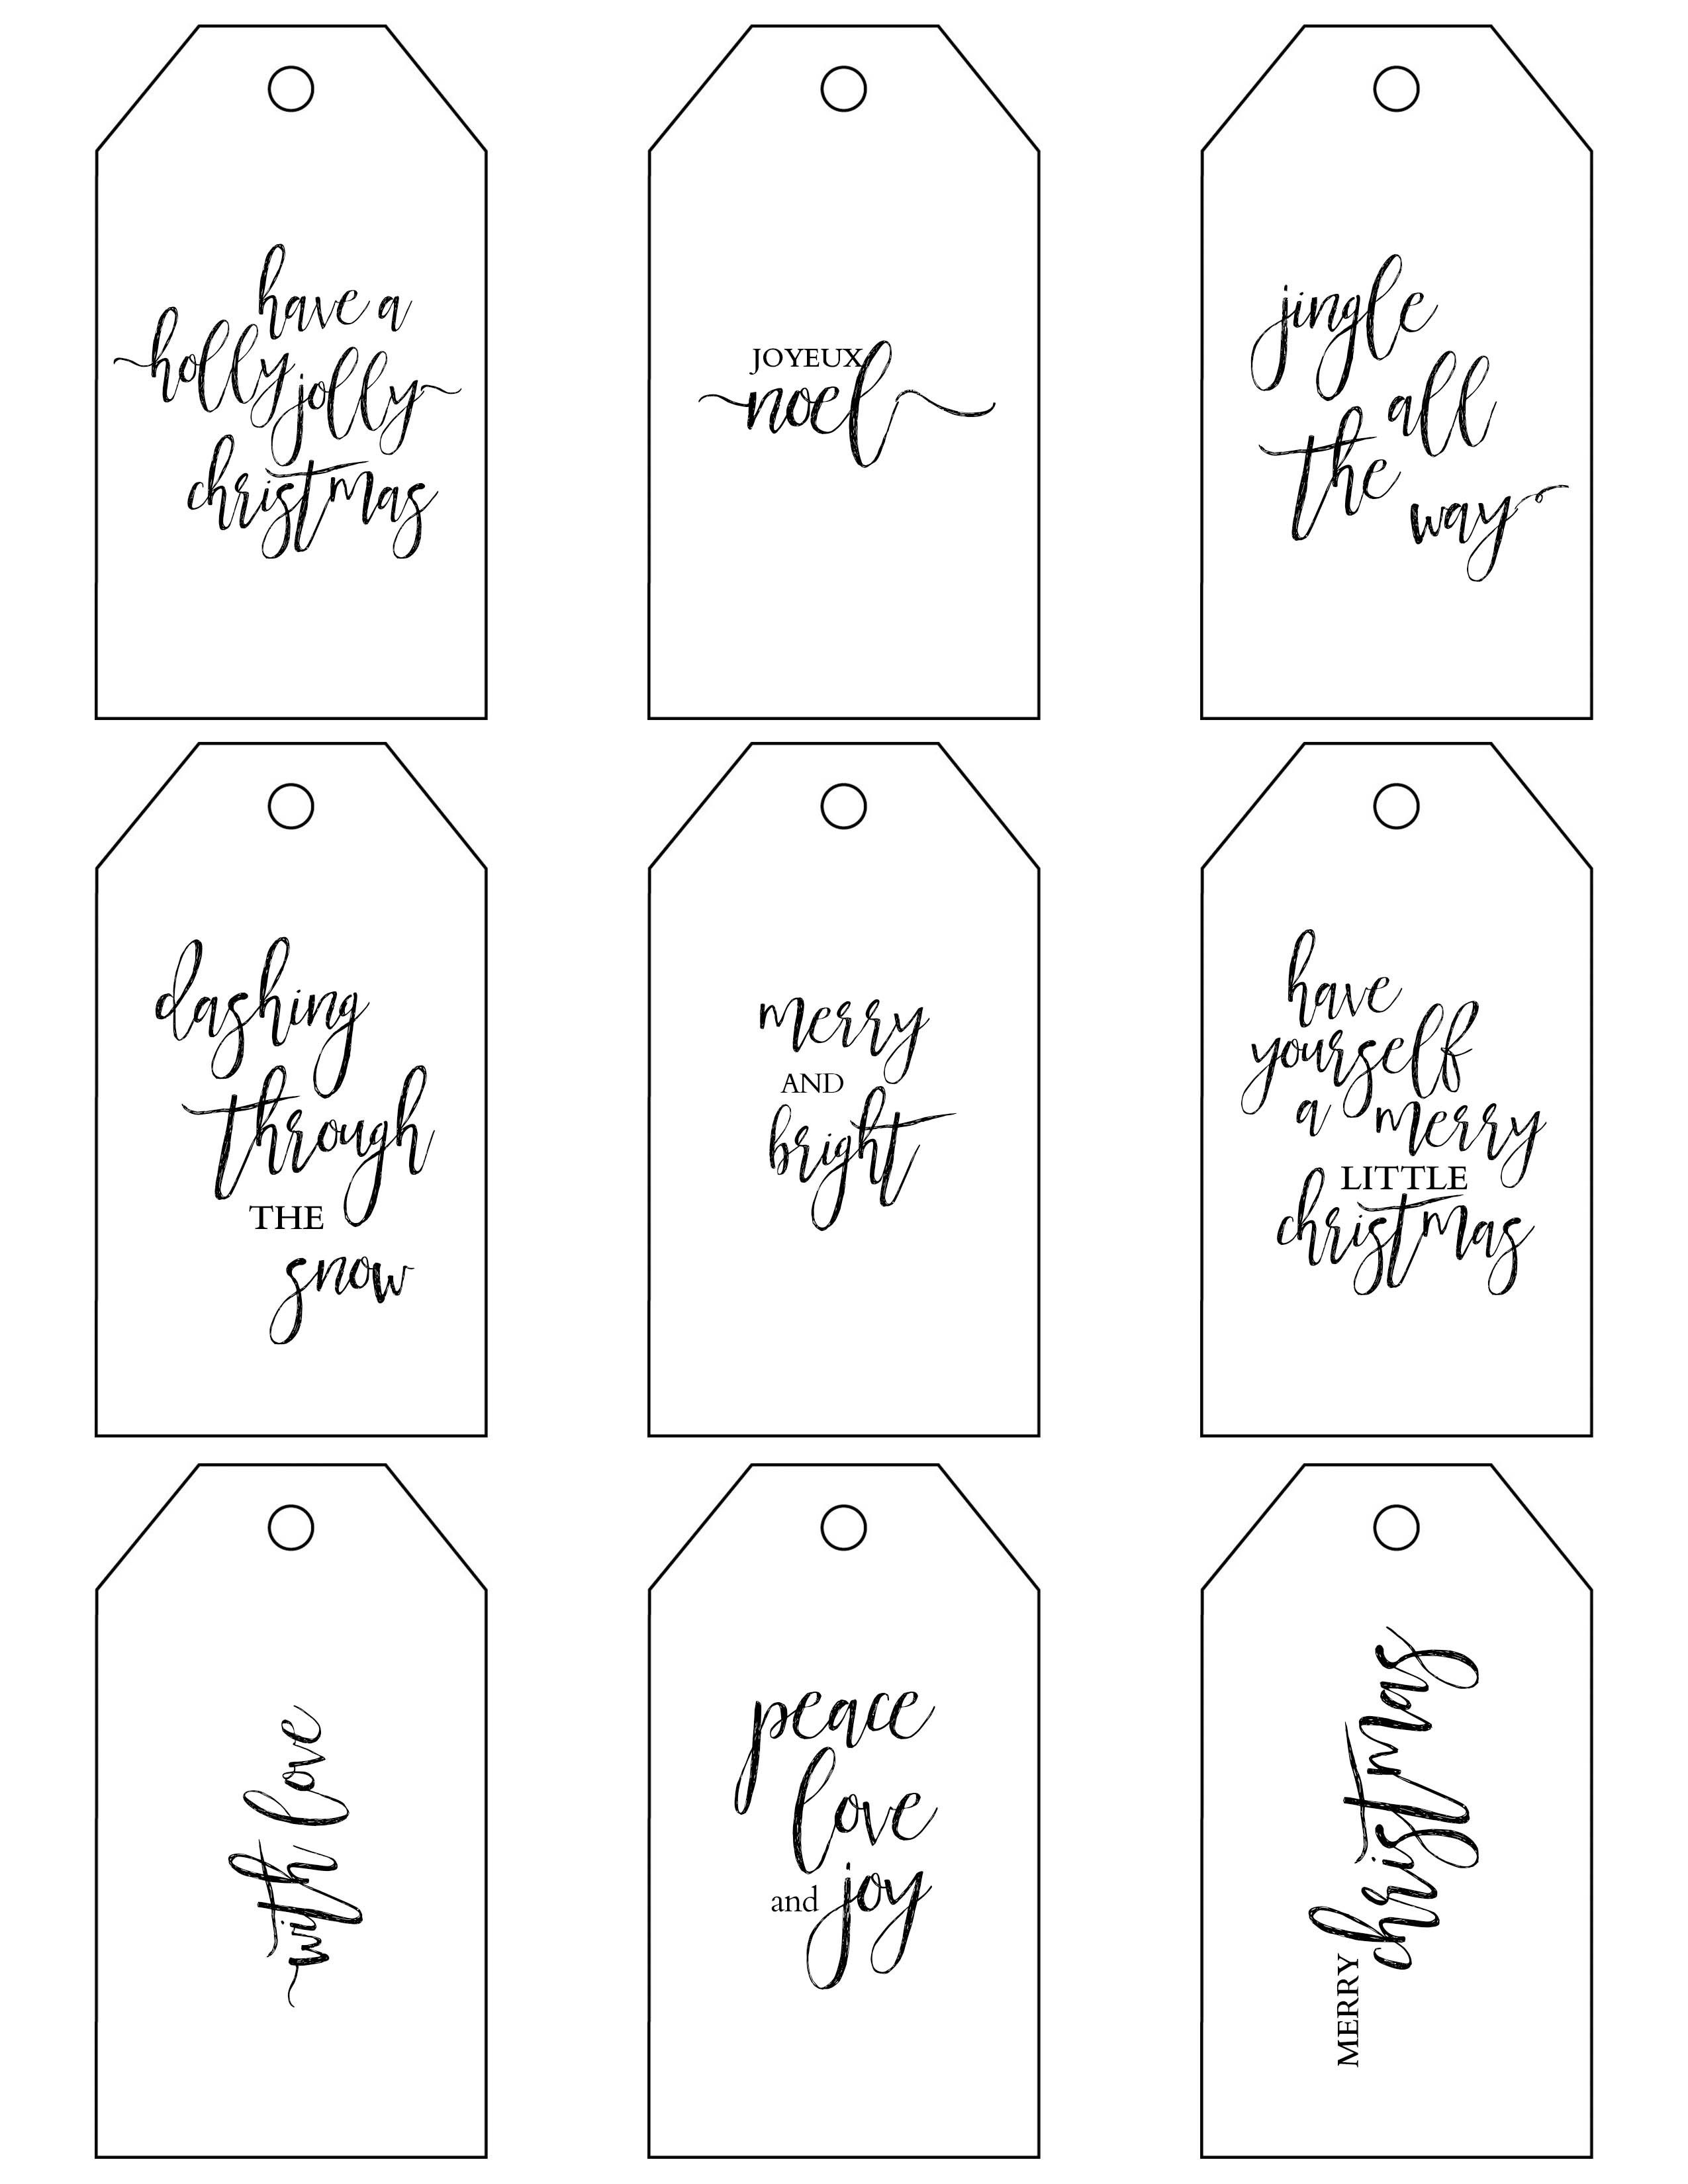 Printable Christmas Gift Tags Make Holiday Wrapping Simple - Free Online Gift Tags Printable